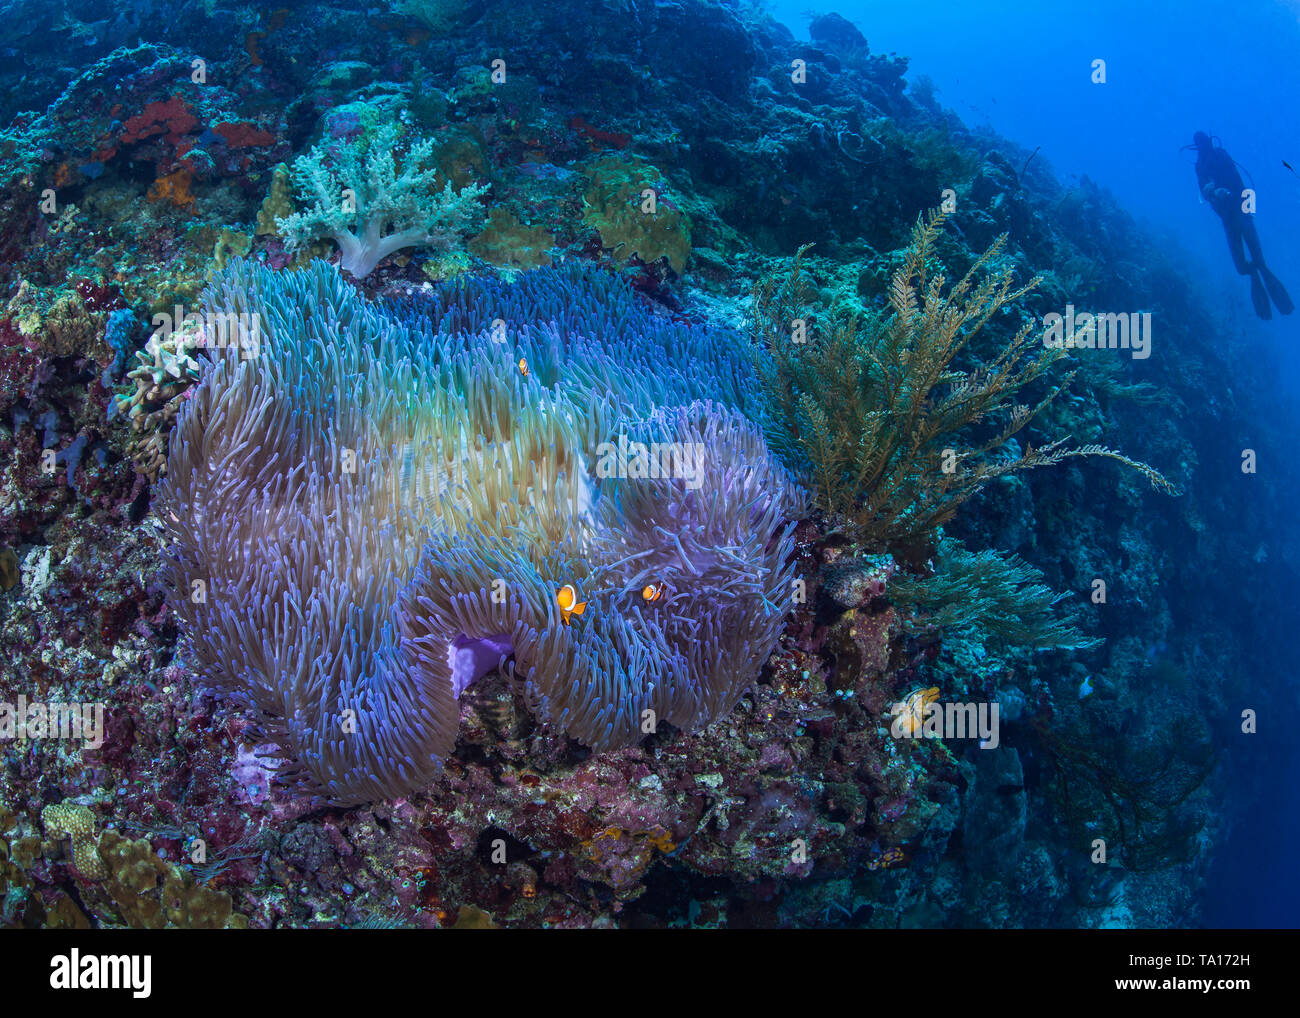 Magnifico bioluminescente anemone a clownfish immerso nei suoi tentacoli su una ripida scogliera di corallo con scuba diver guardare in blu sullo sfondo di acqua Foto Stock